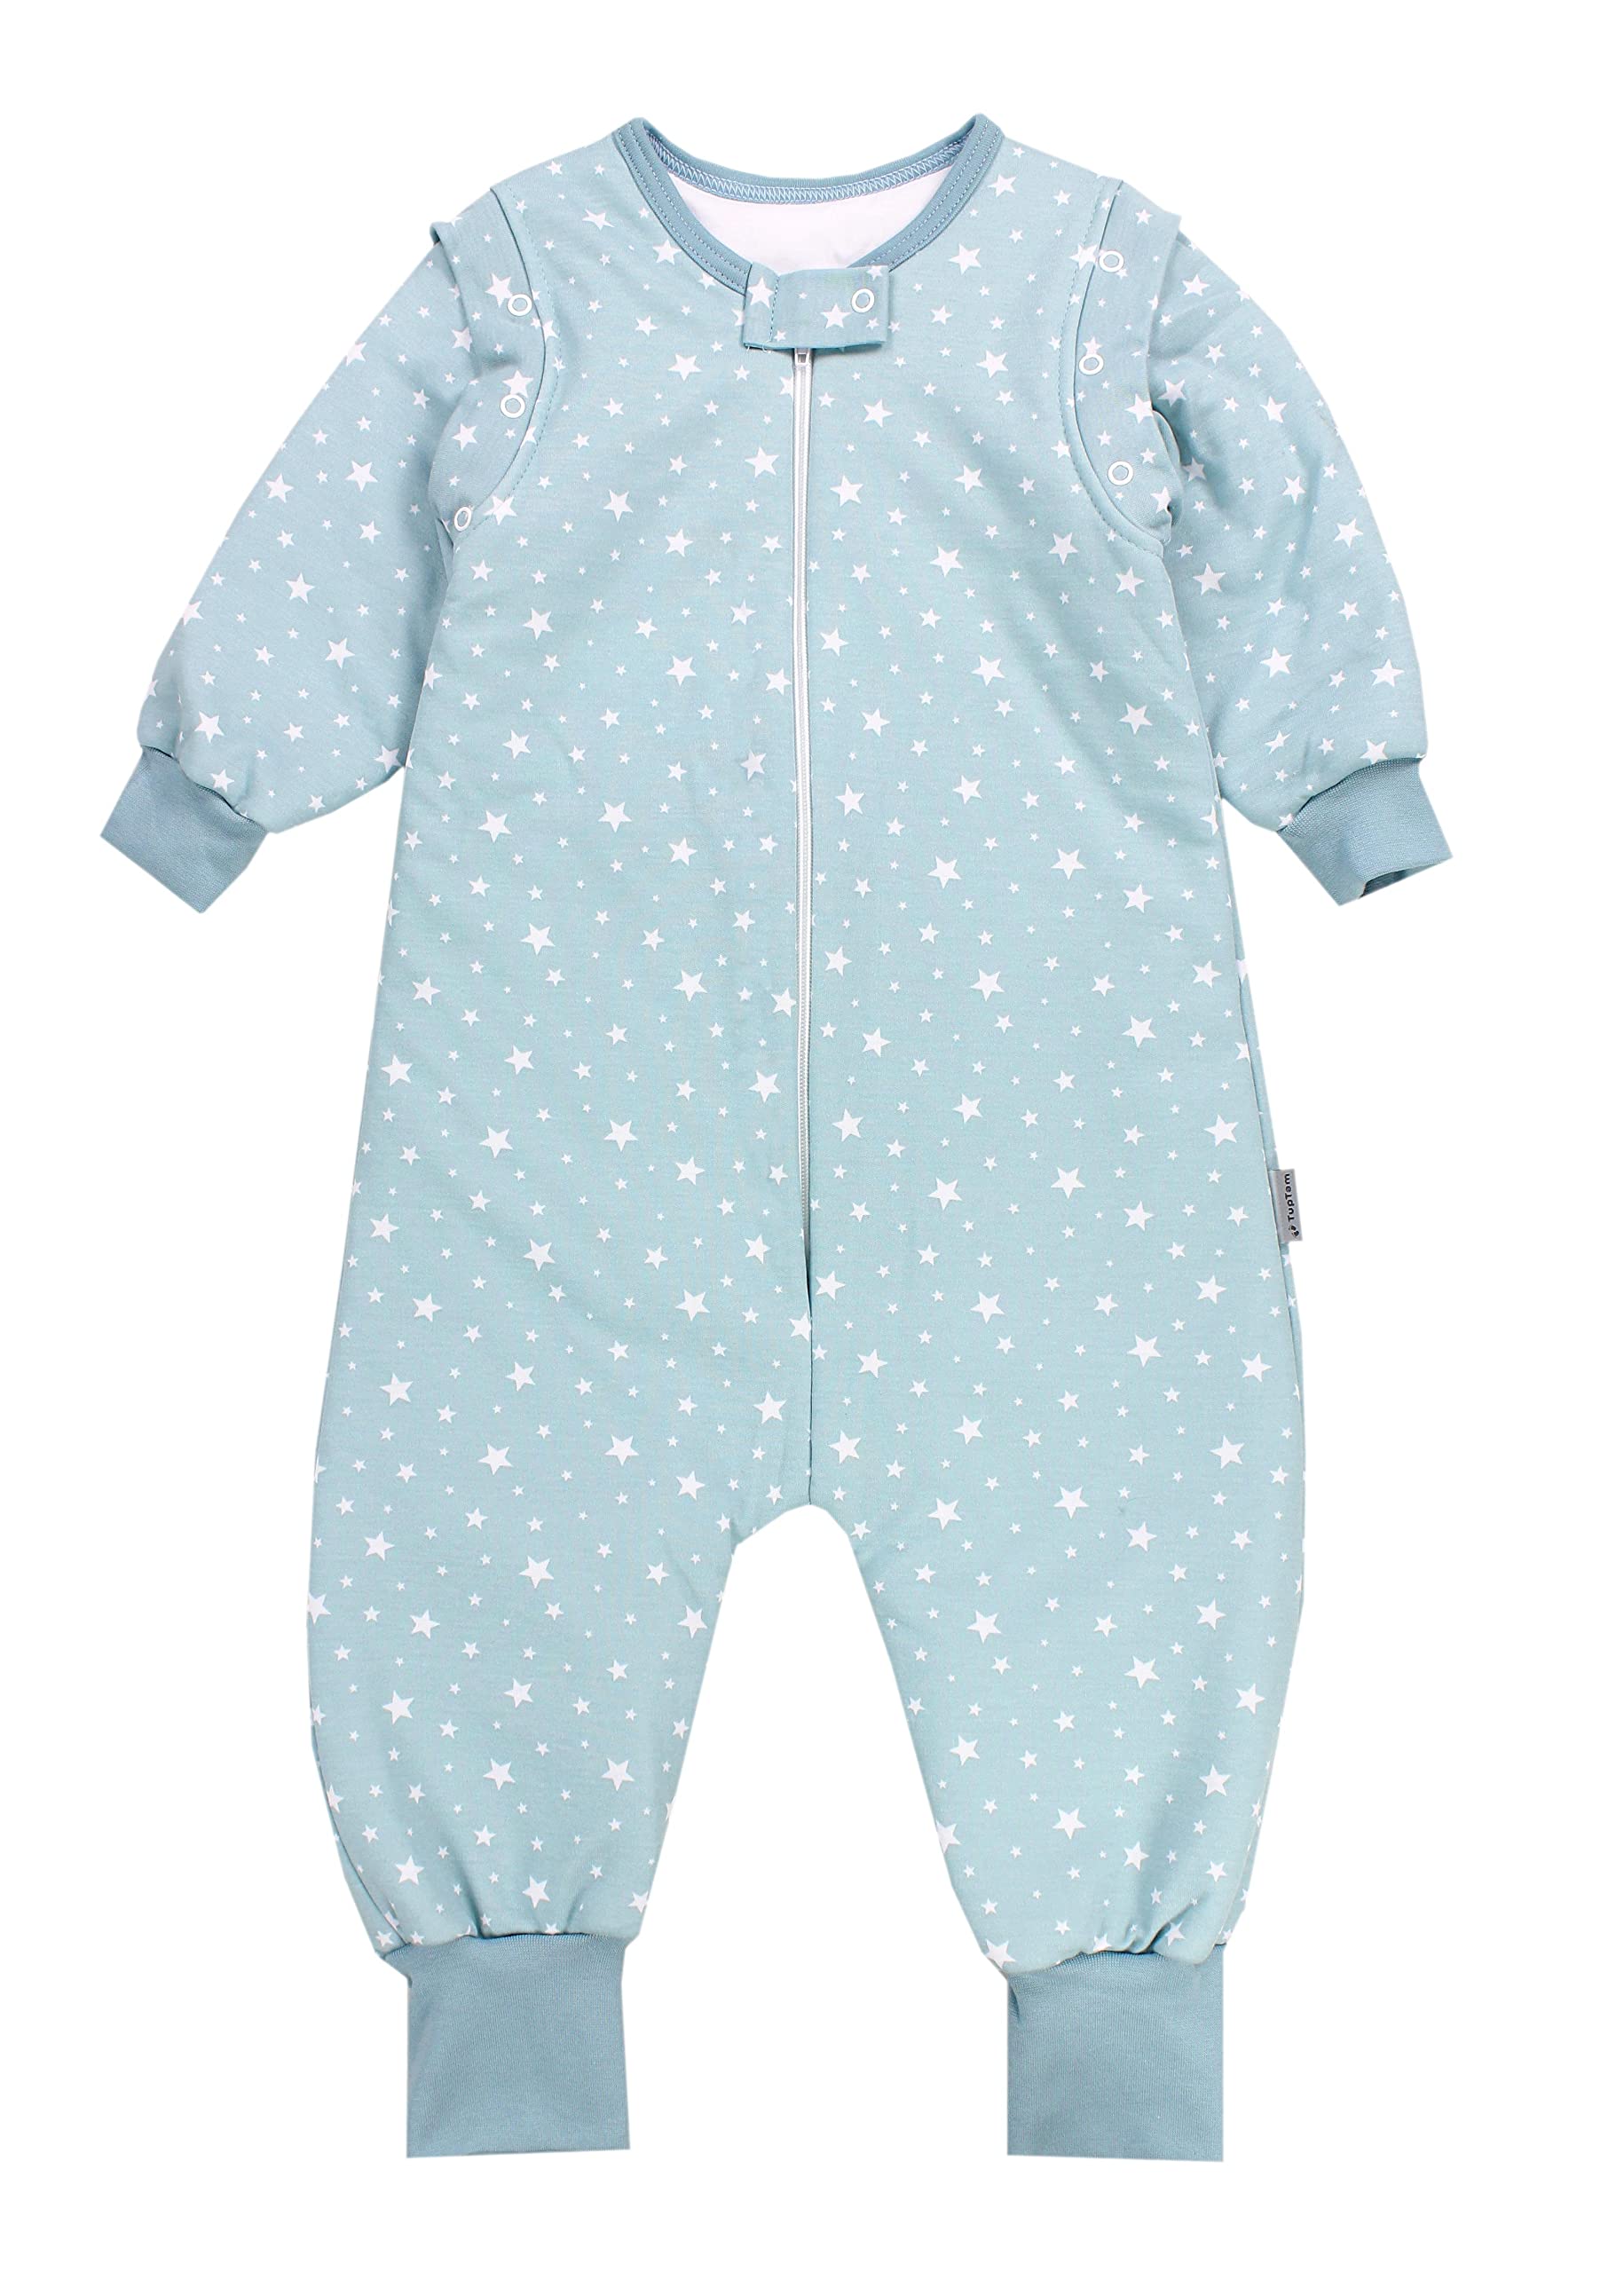 TupTam Baby Schlafsack mit Füßen und Ärmel OEKO-TEX zertifizierte Materialien Winterschlafsack, Farbe: Sterne Mintgrün, Größe: 80-86